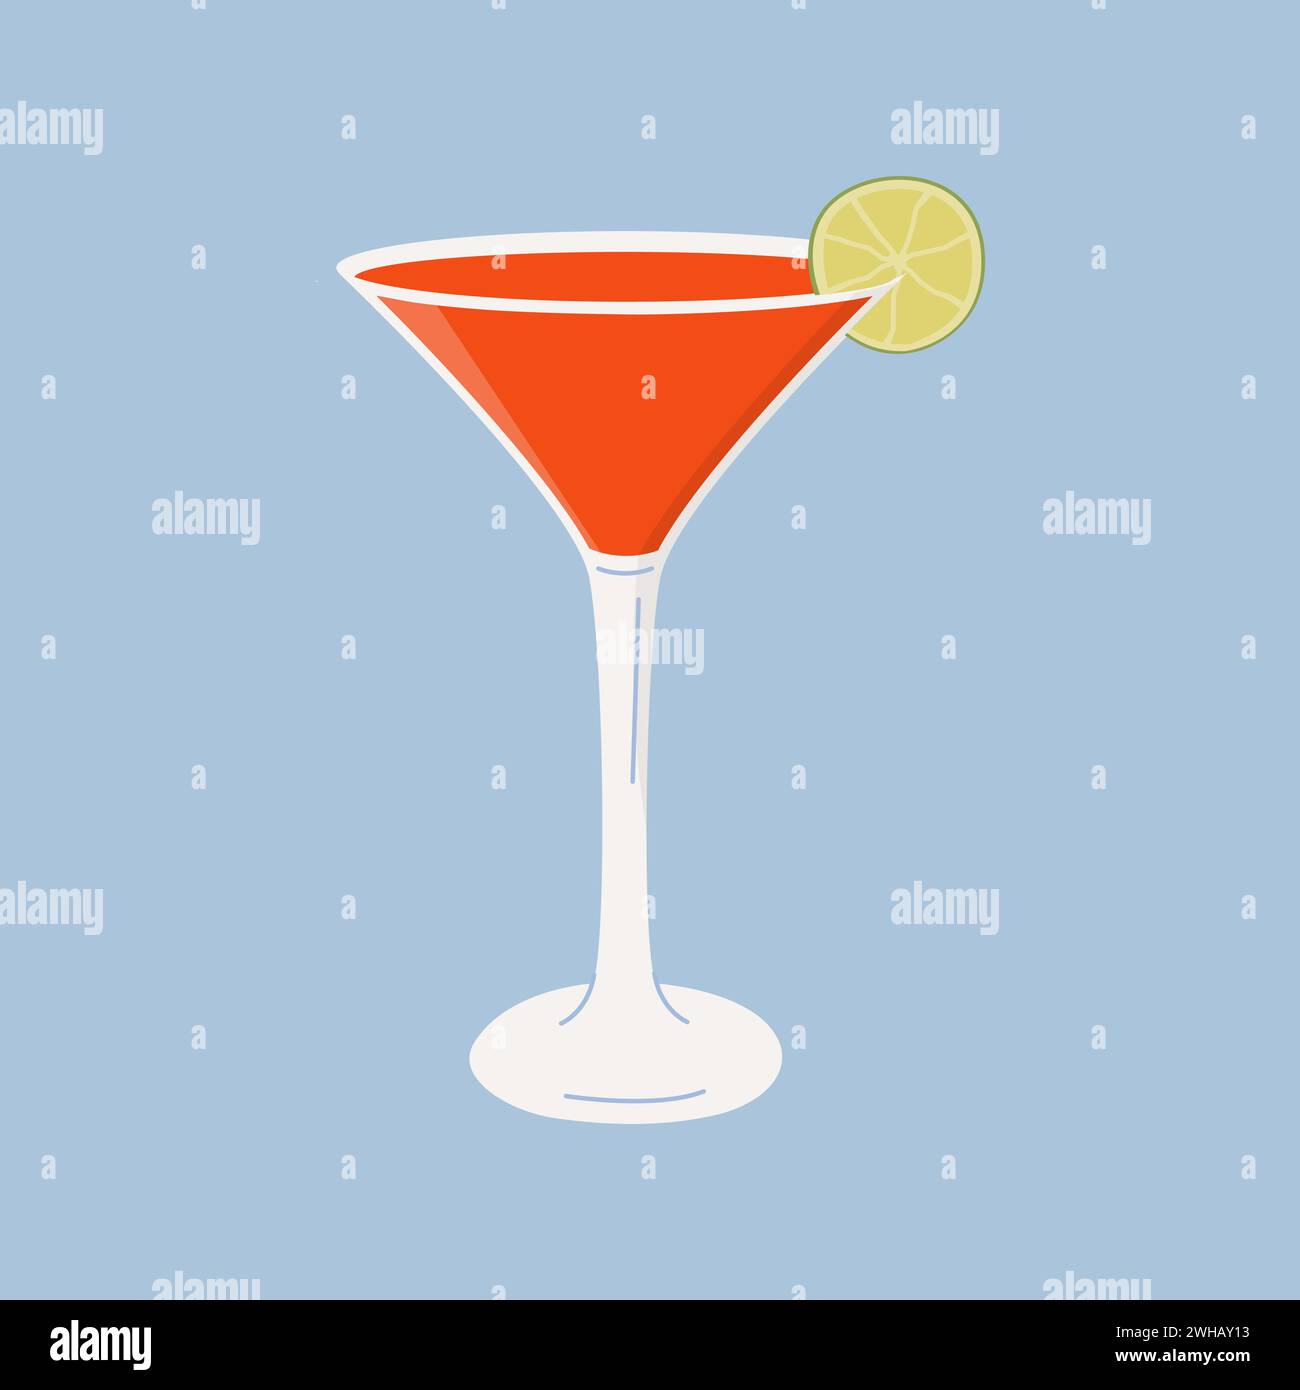 Kosmopolitischer Cocktail in Martini-Glas garniert mit Limettenrad. Sommer-Aperitif mit minimalistischem quadratischem Muster. Alkoholisches rotes Getränk mit Limette slic Stock Vektor